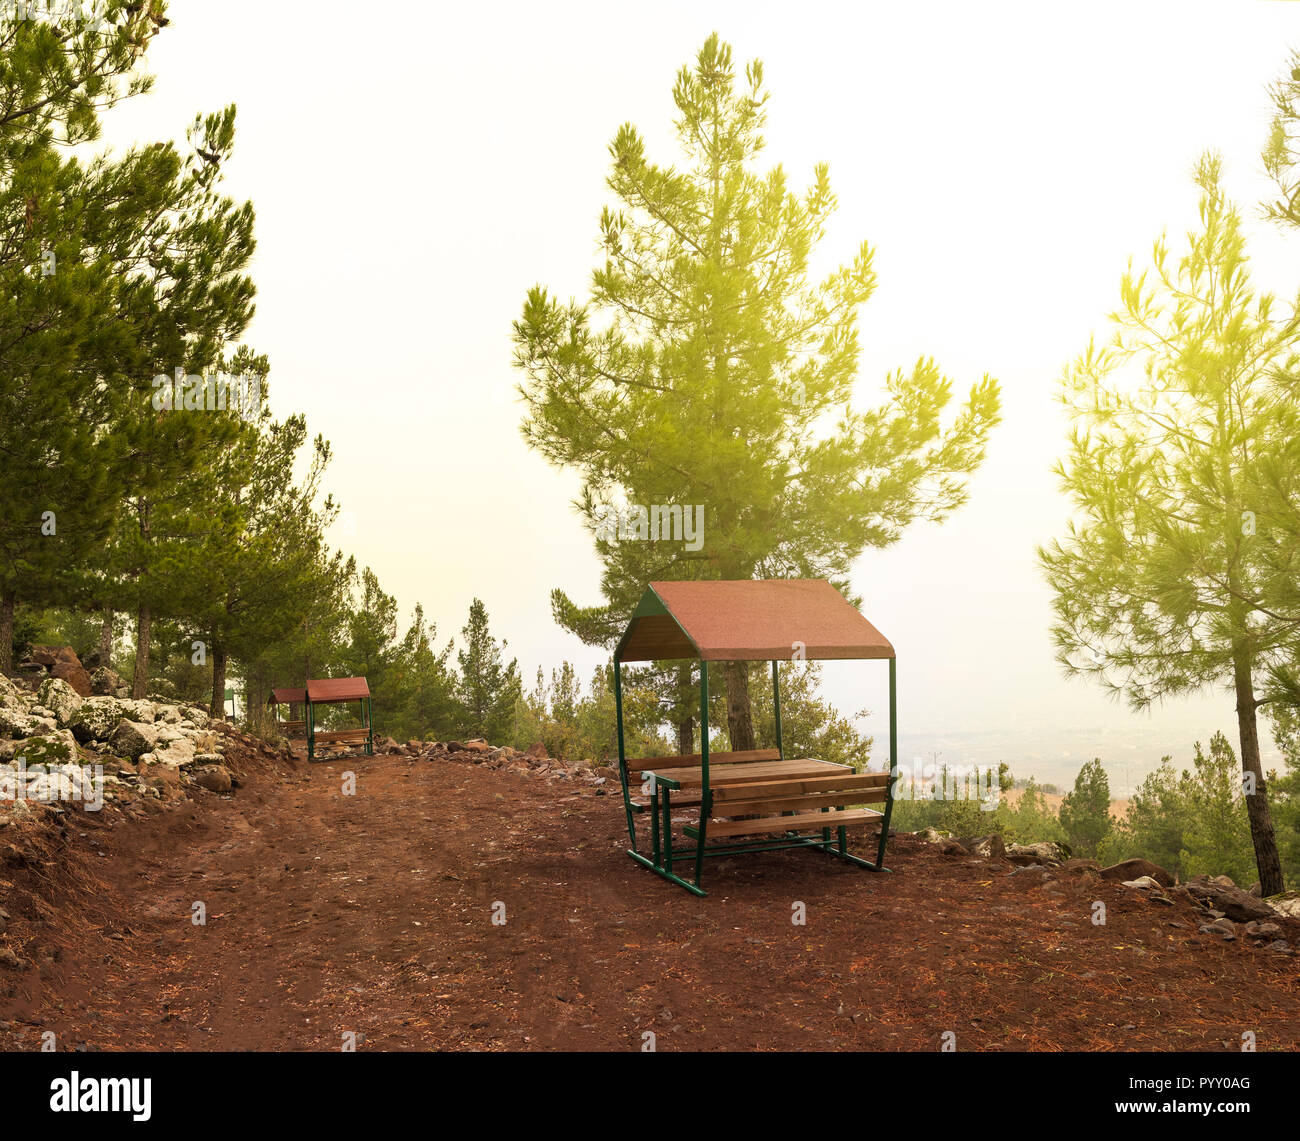 Wald Landschaft mit Holzmöbeln für ein Picknick an der frischen Luft Stockfoto